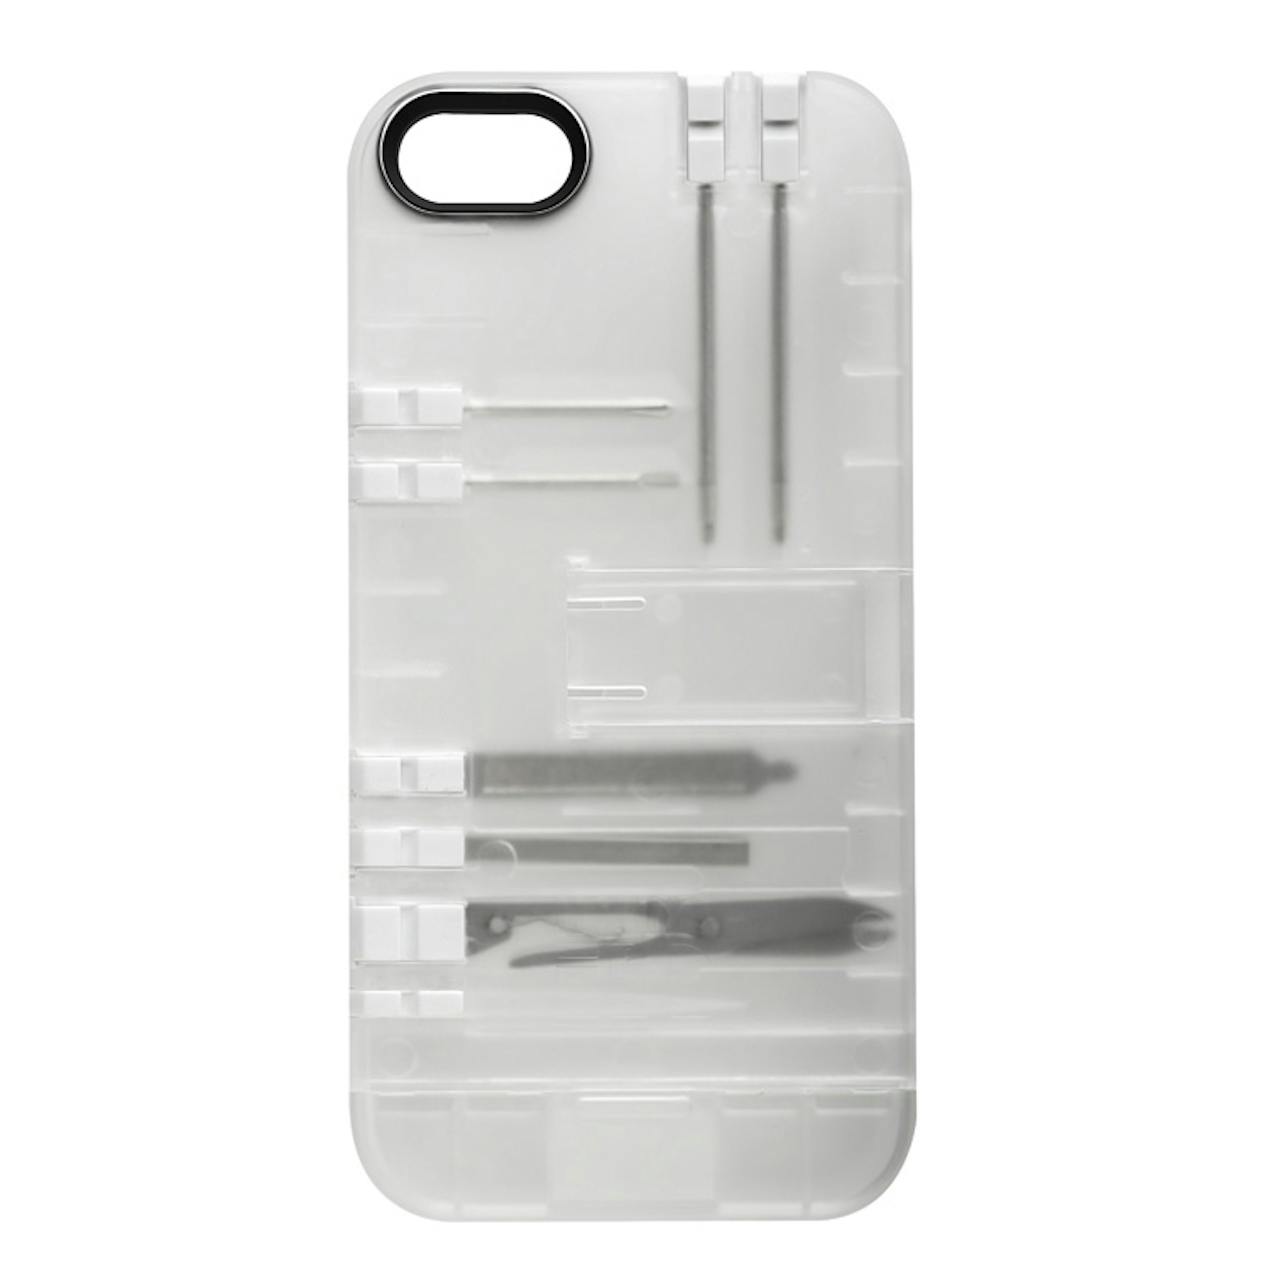 Multi-Tool iPhone Case